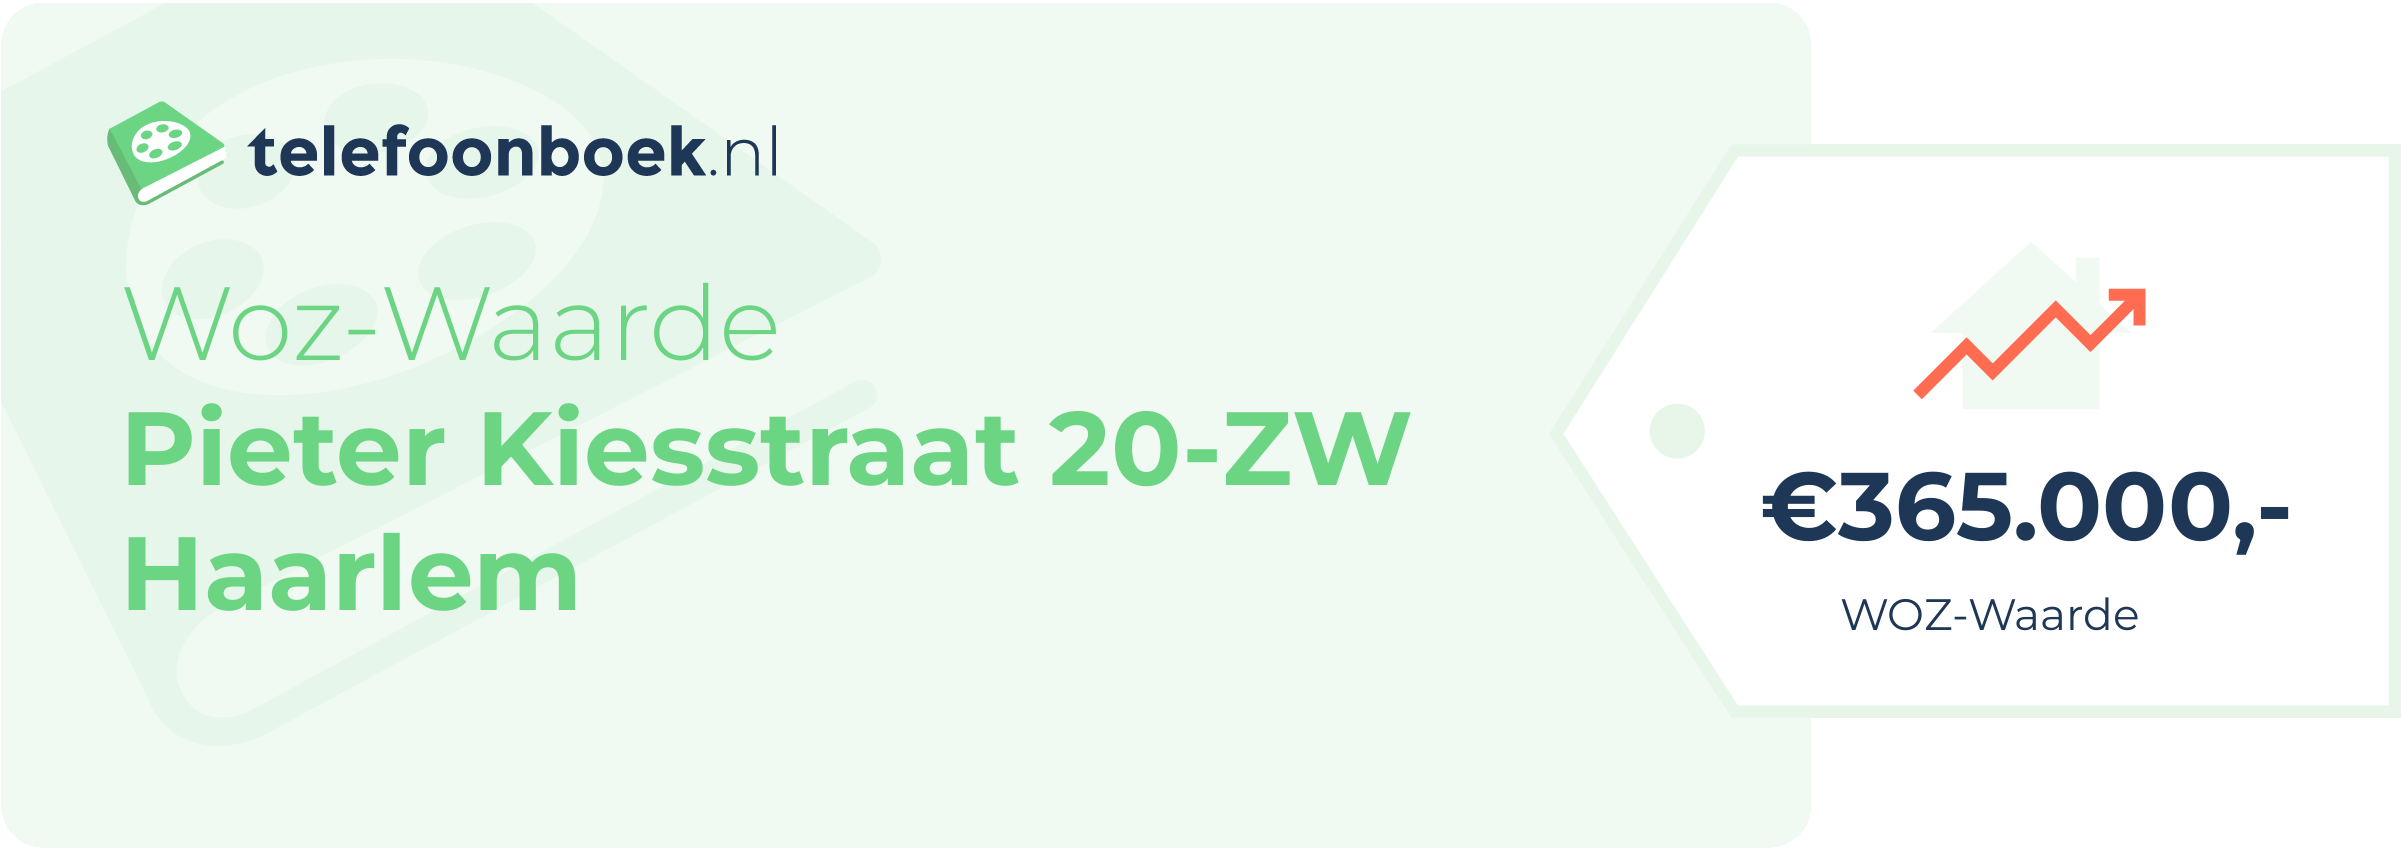 WOZ-waarde Pieter Kiesstraat 20-ZW Haarlem